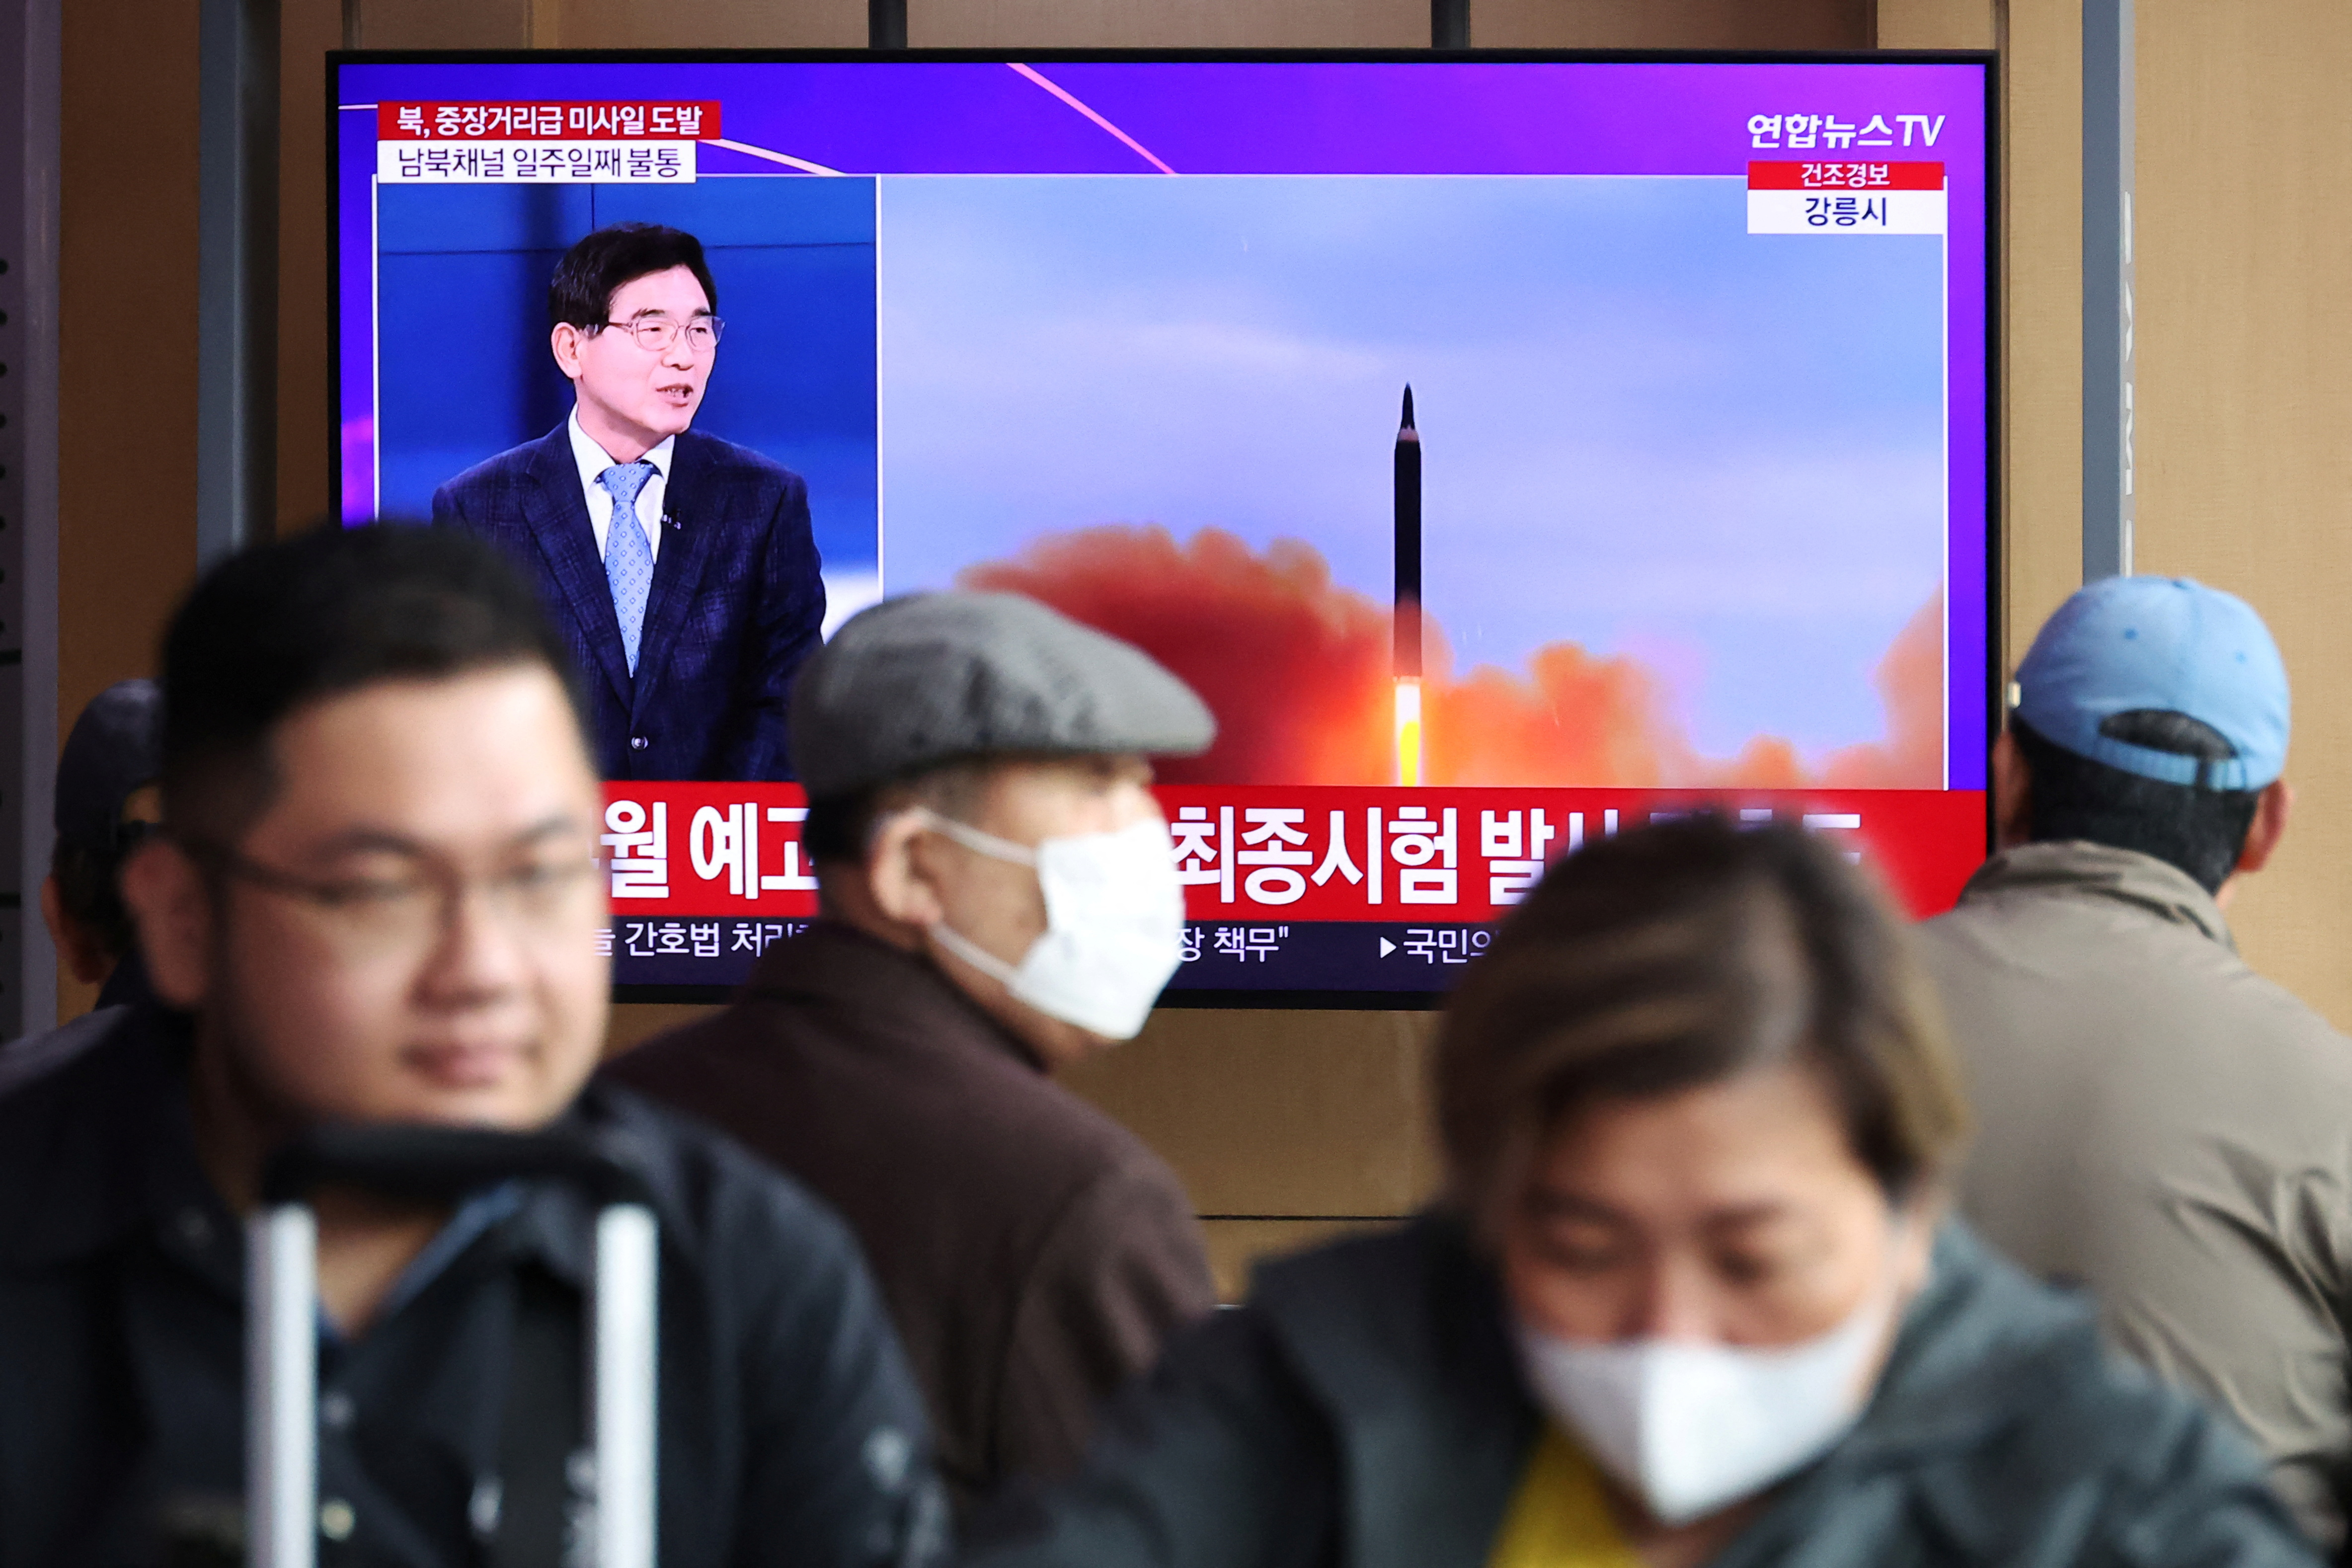 Varias personas observan un televisor que emite una noticia sobre el lanzamiento por Corea del Norte de un misil balístico de alcance intermedio o superior, en una estación de tren de Seúl, Corea del Sur, 13 de abril de 2023.   REUTERS/Kim Hong-Ji
